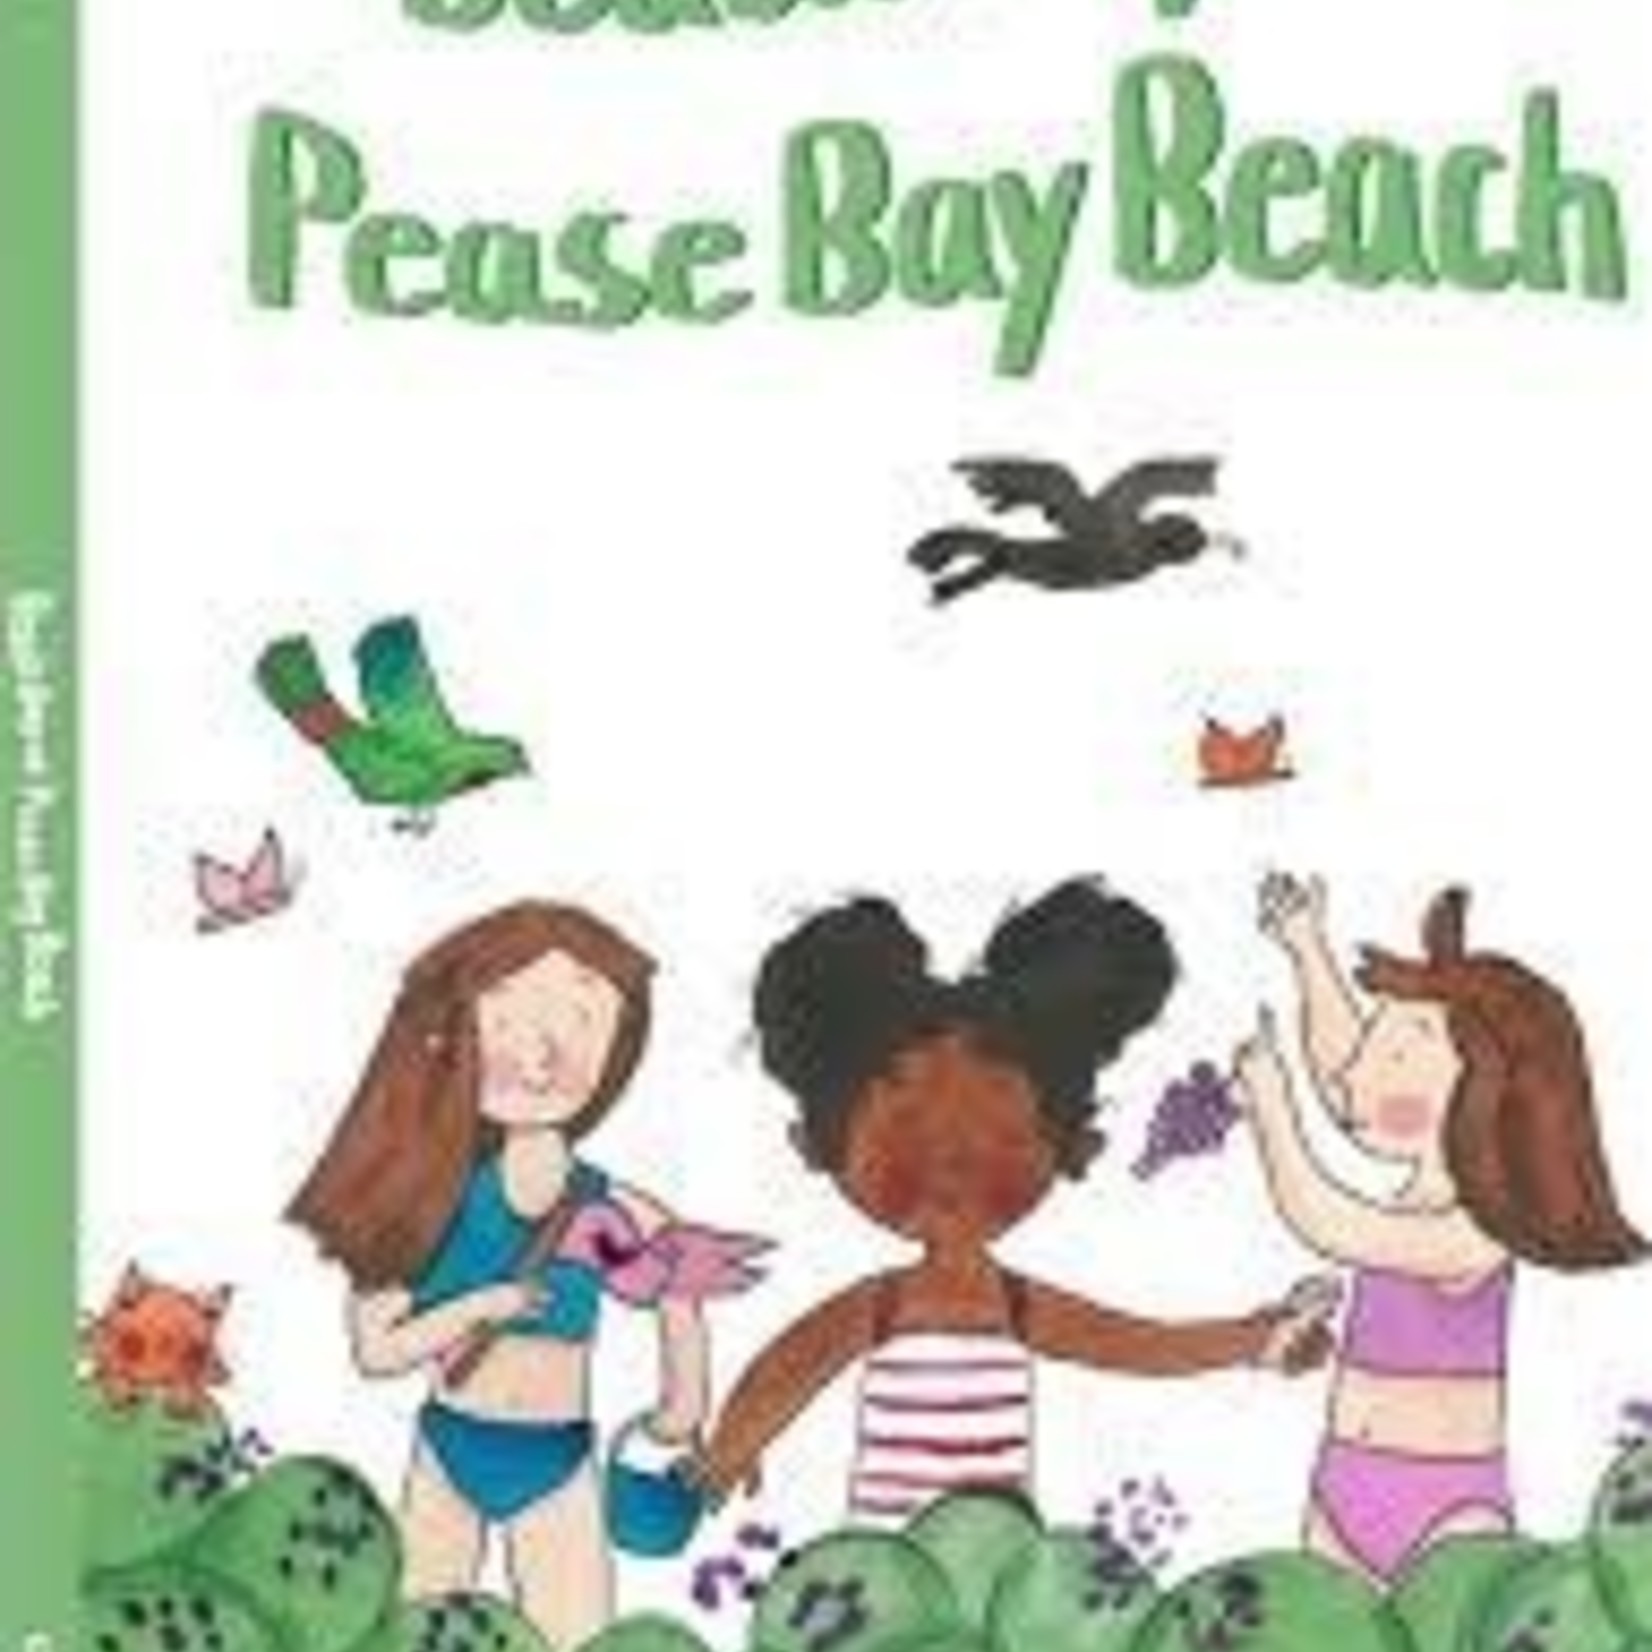 Book Beach Day at Pease Bay Beach